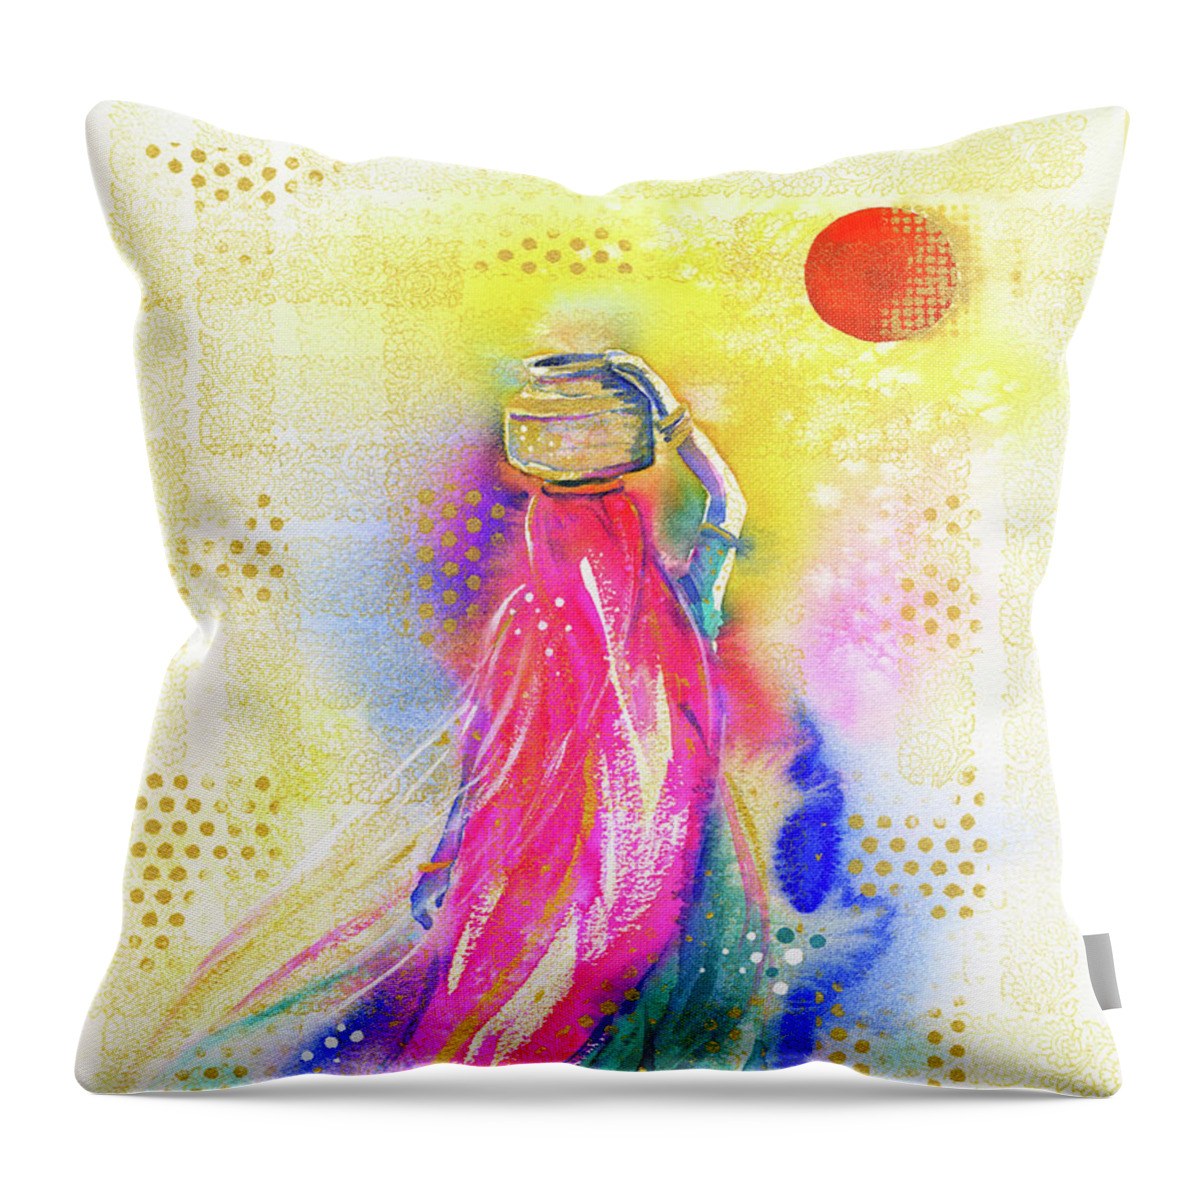 Bindi Throw Pillow featuring the painting Bindi by Zaira Dzhaubaeva